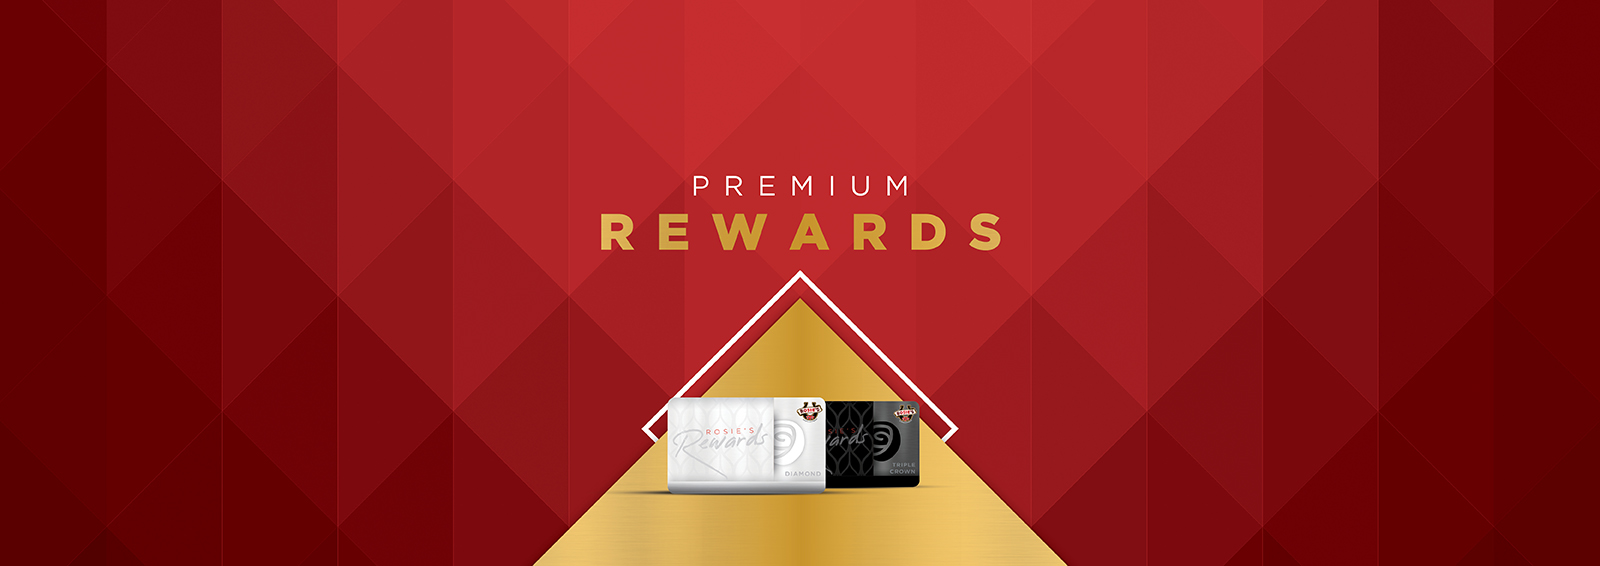 premium rewards